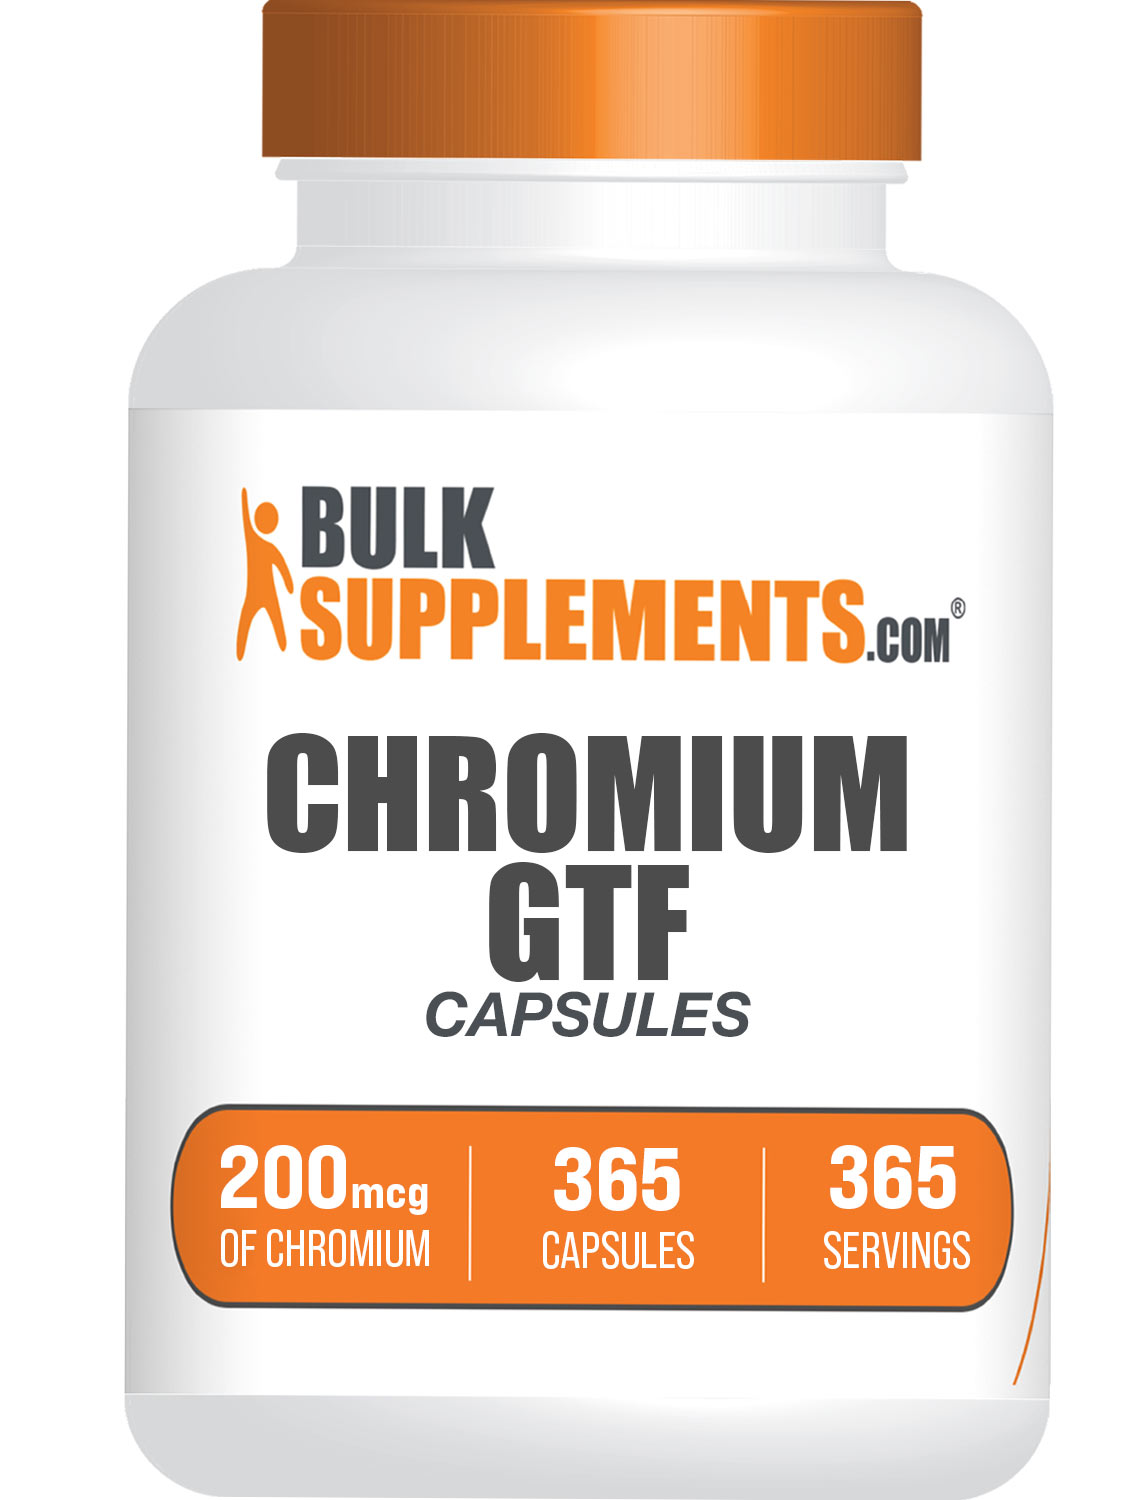 Chromium GTF Capsules